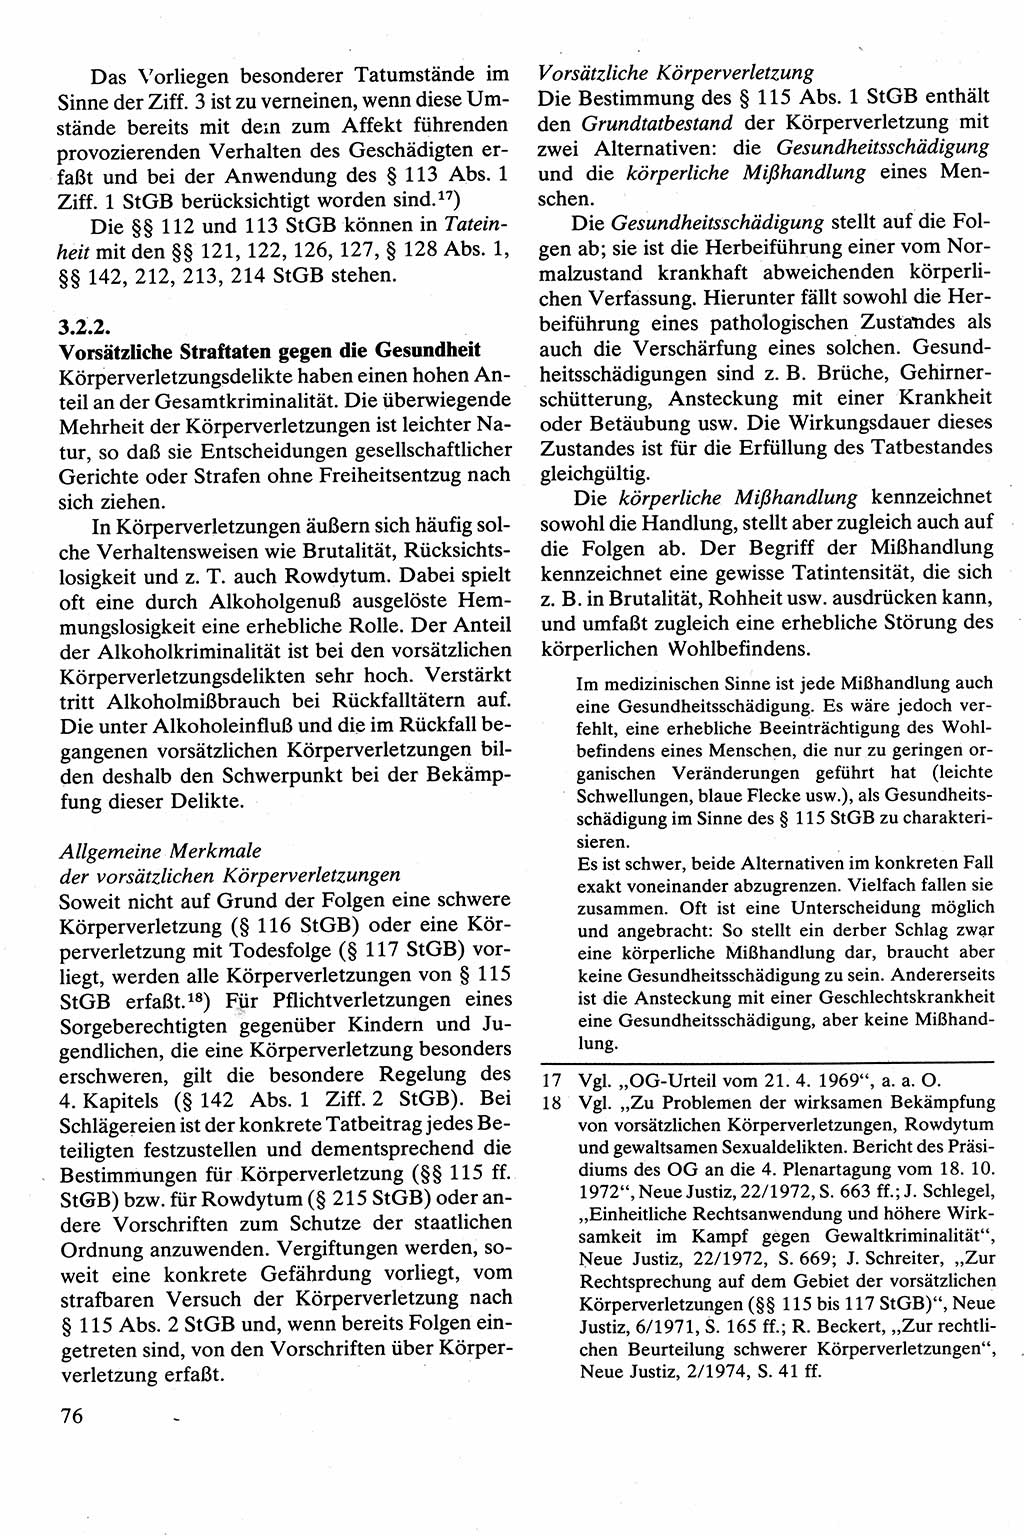 Strafrecht [Deutsche Demokratische Republik (DDR)], Besonderer Teil, Lehrbuch 1981, Seite 76 (Strafr. DDR BT Lb. 1981, S. 76)